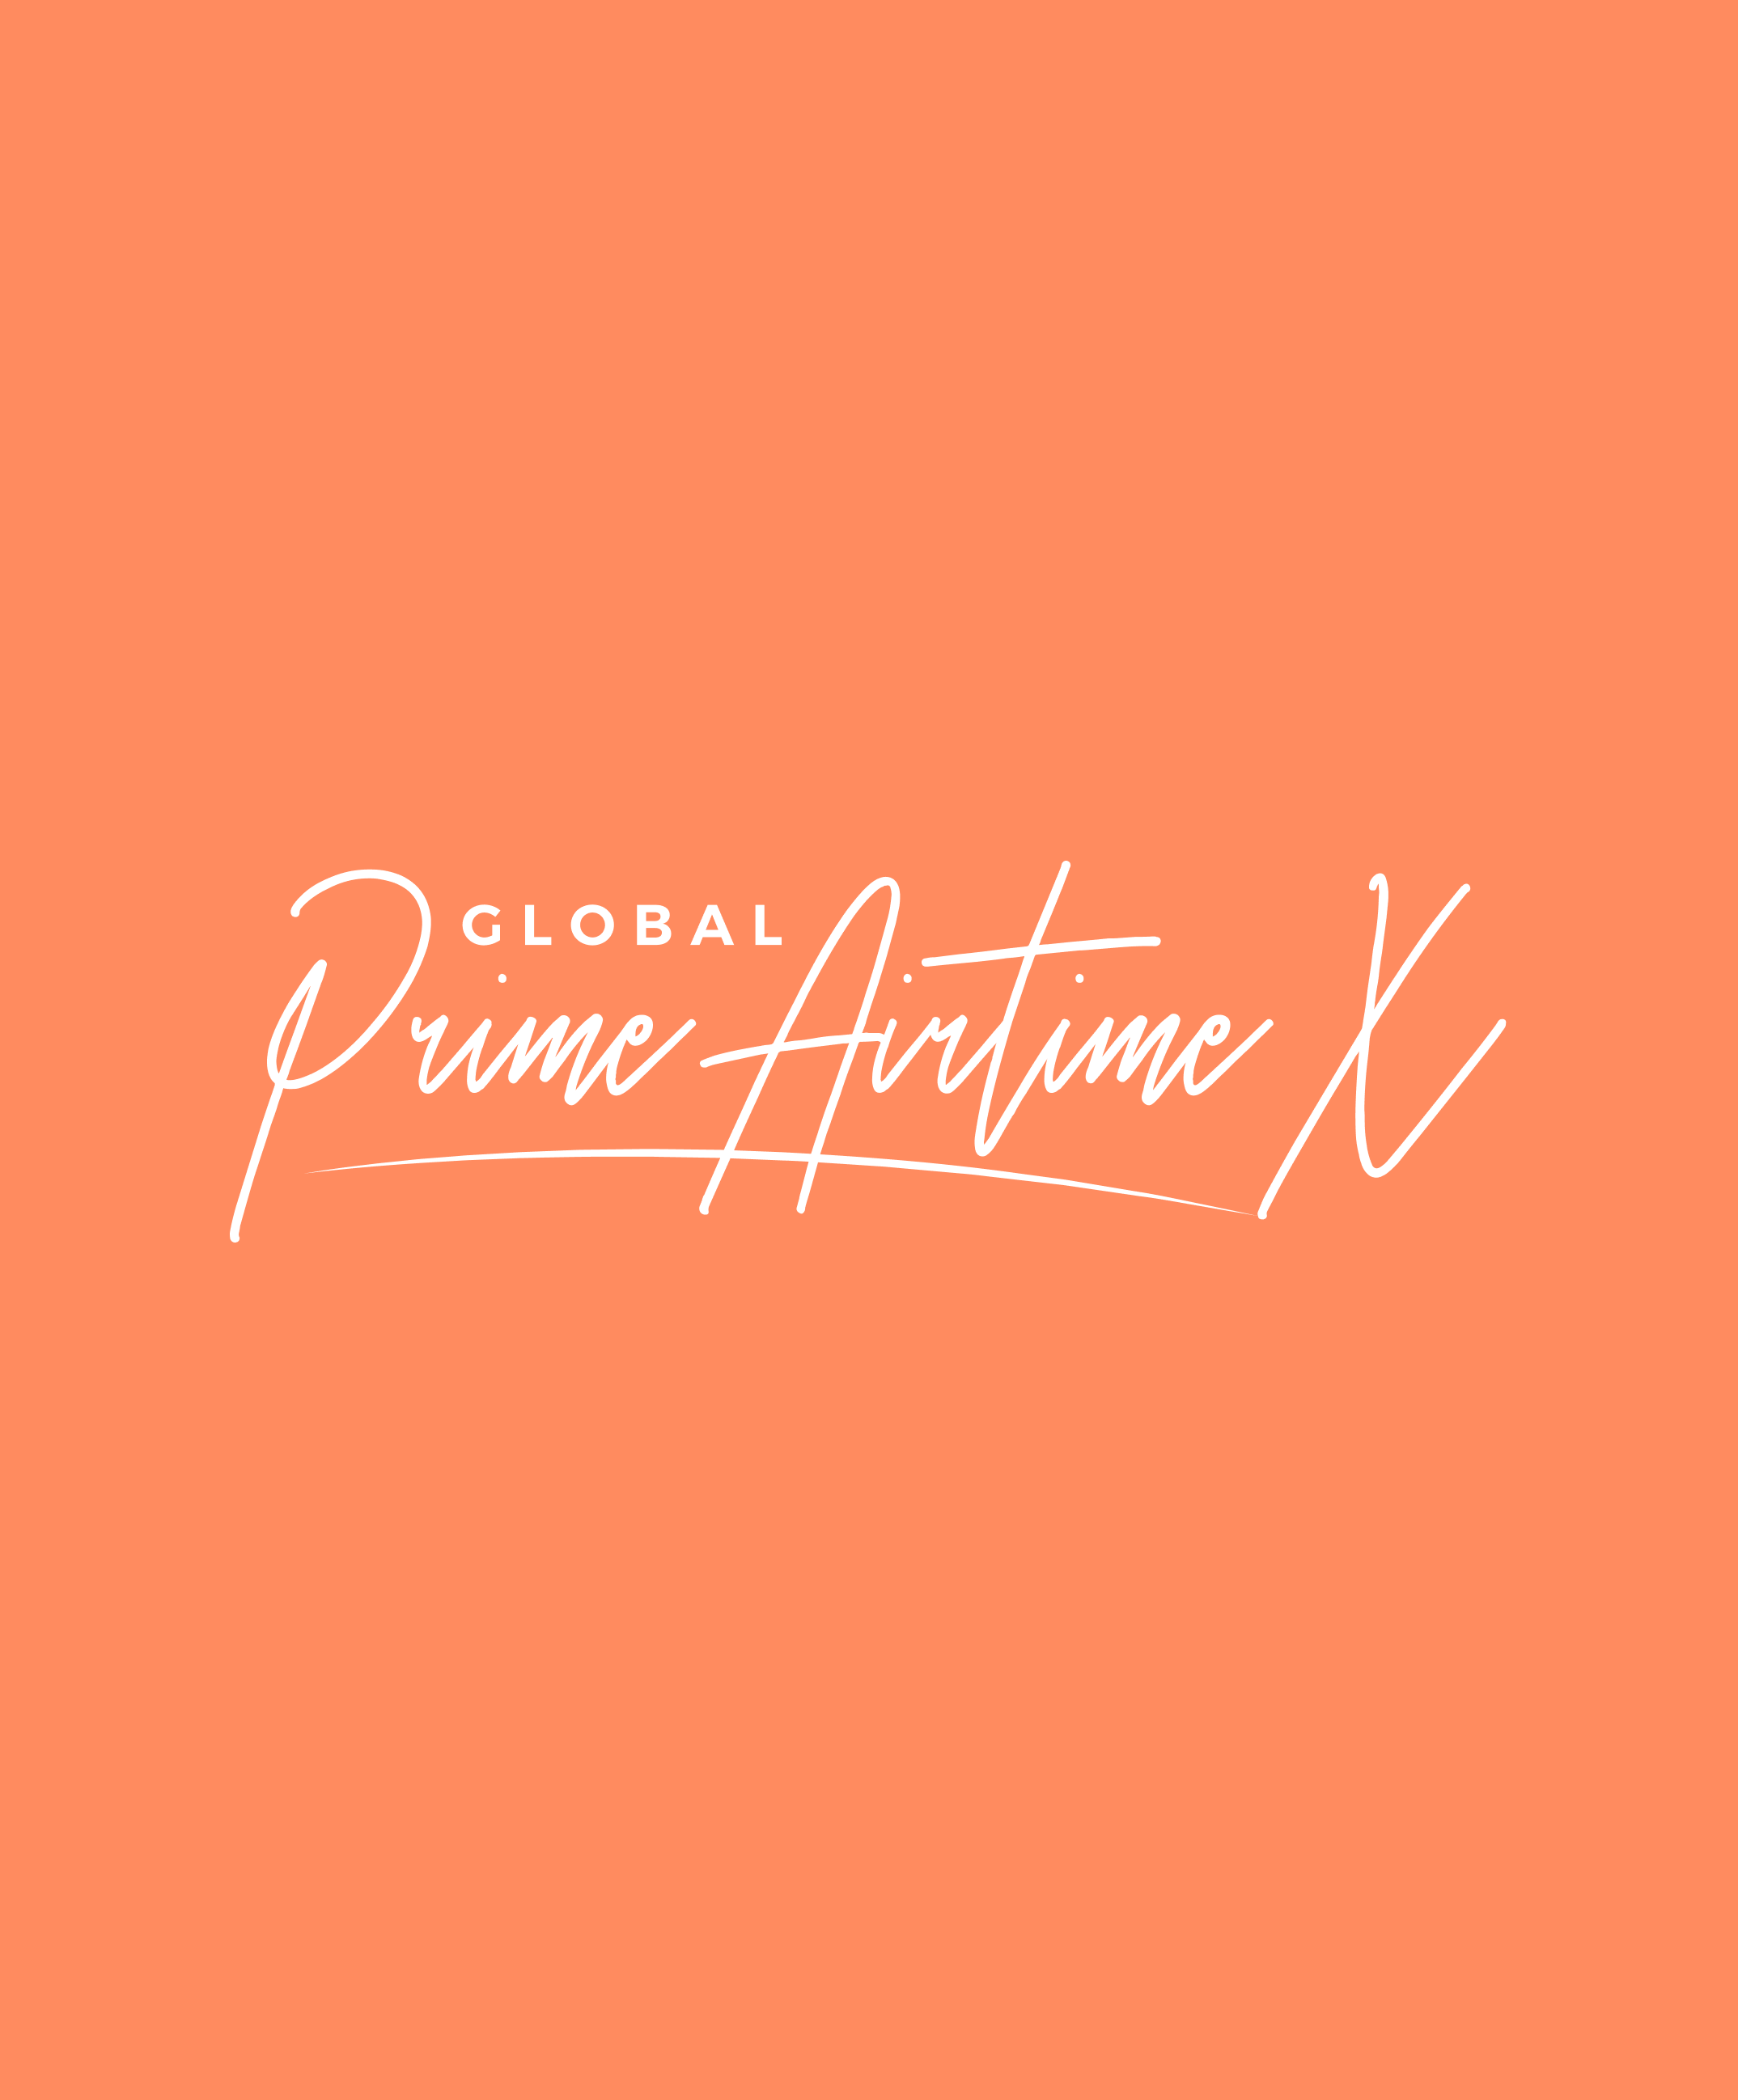 Prime Airtime